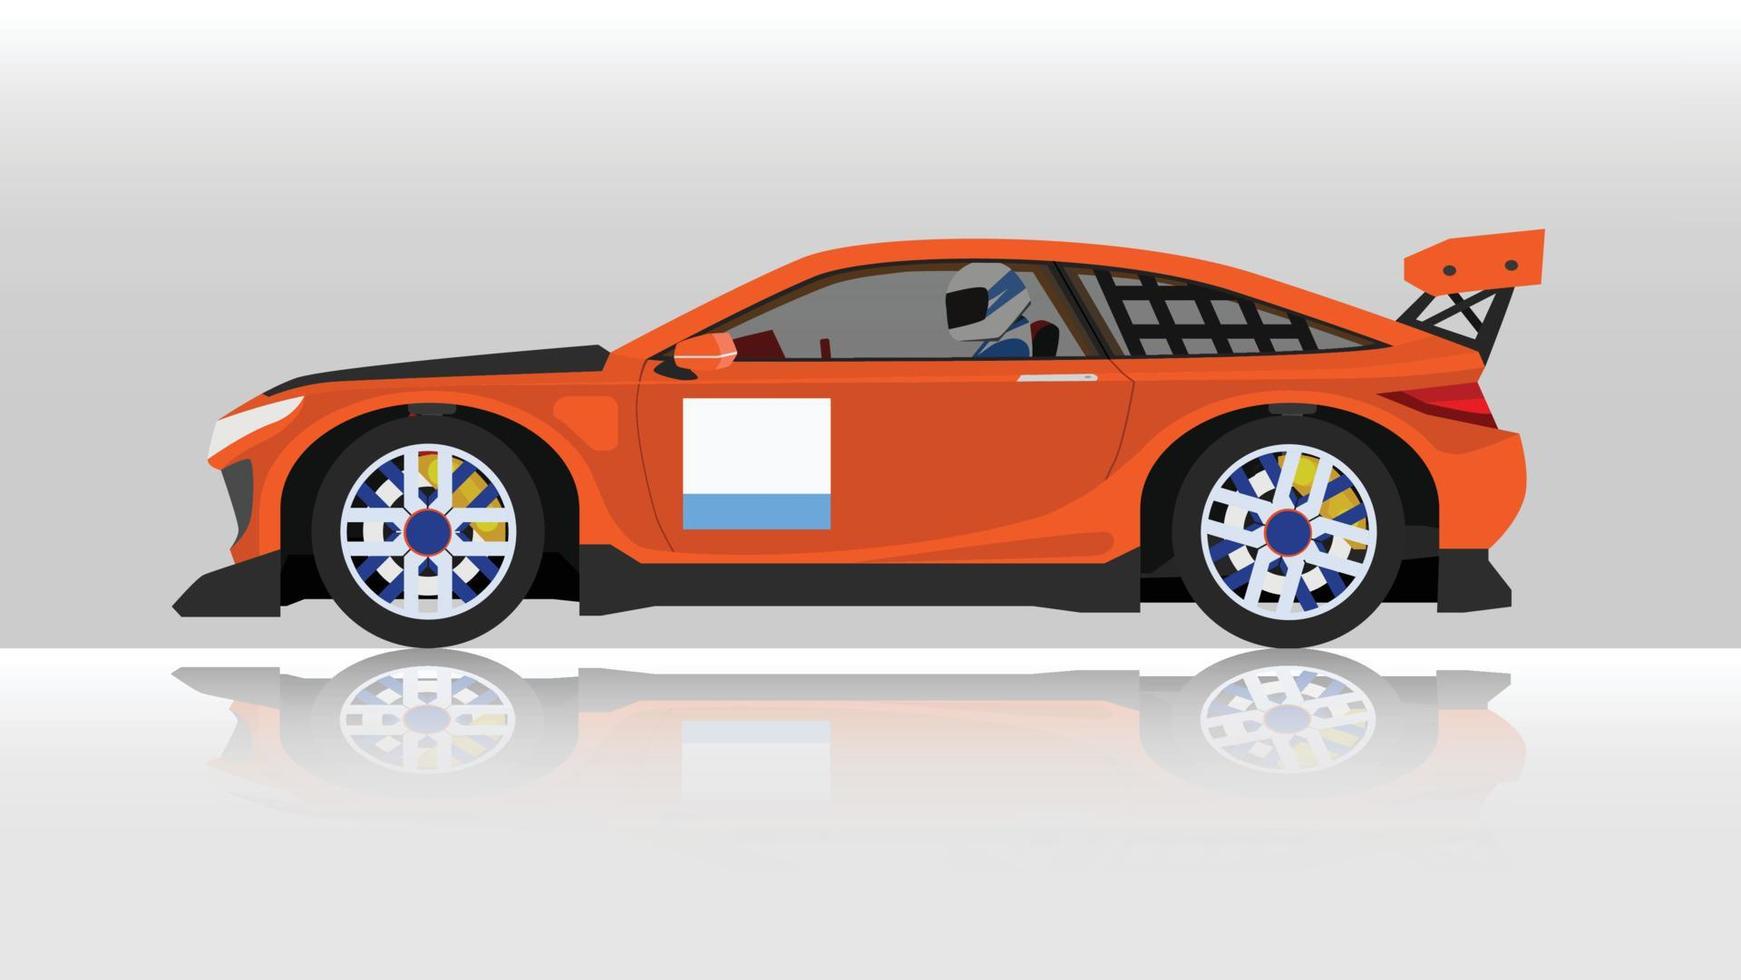 Illustration vectorielle conceptuelle du côté détaillé d'une voiture de sport orange plate avec homme conduisant à l'intérieur de la voiture. avec l'ombre de la voiture réfléchie par le sol en dessous. et fond blanc isolé. vecteur